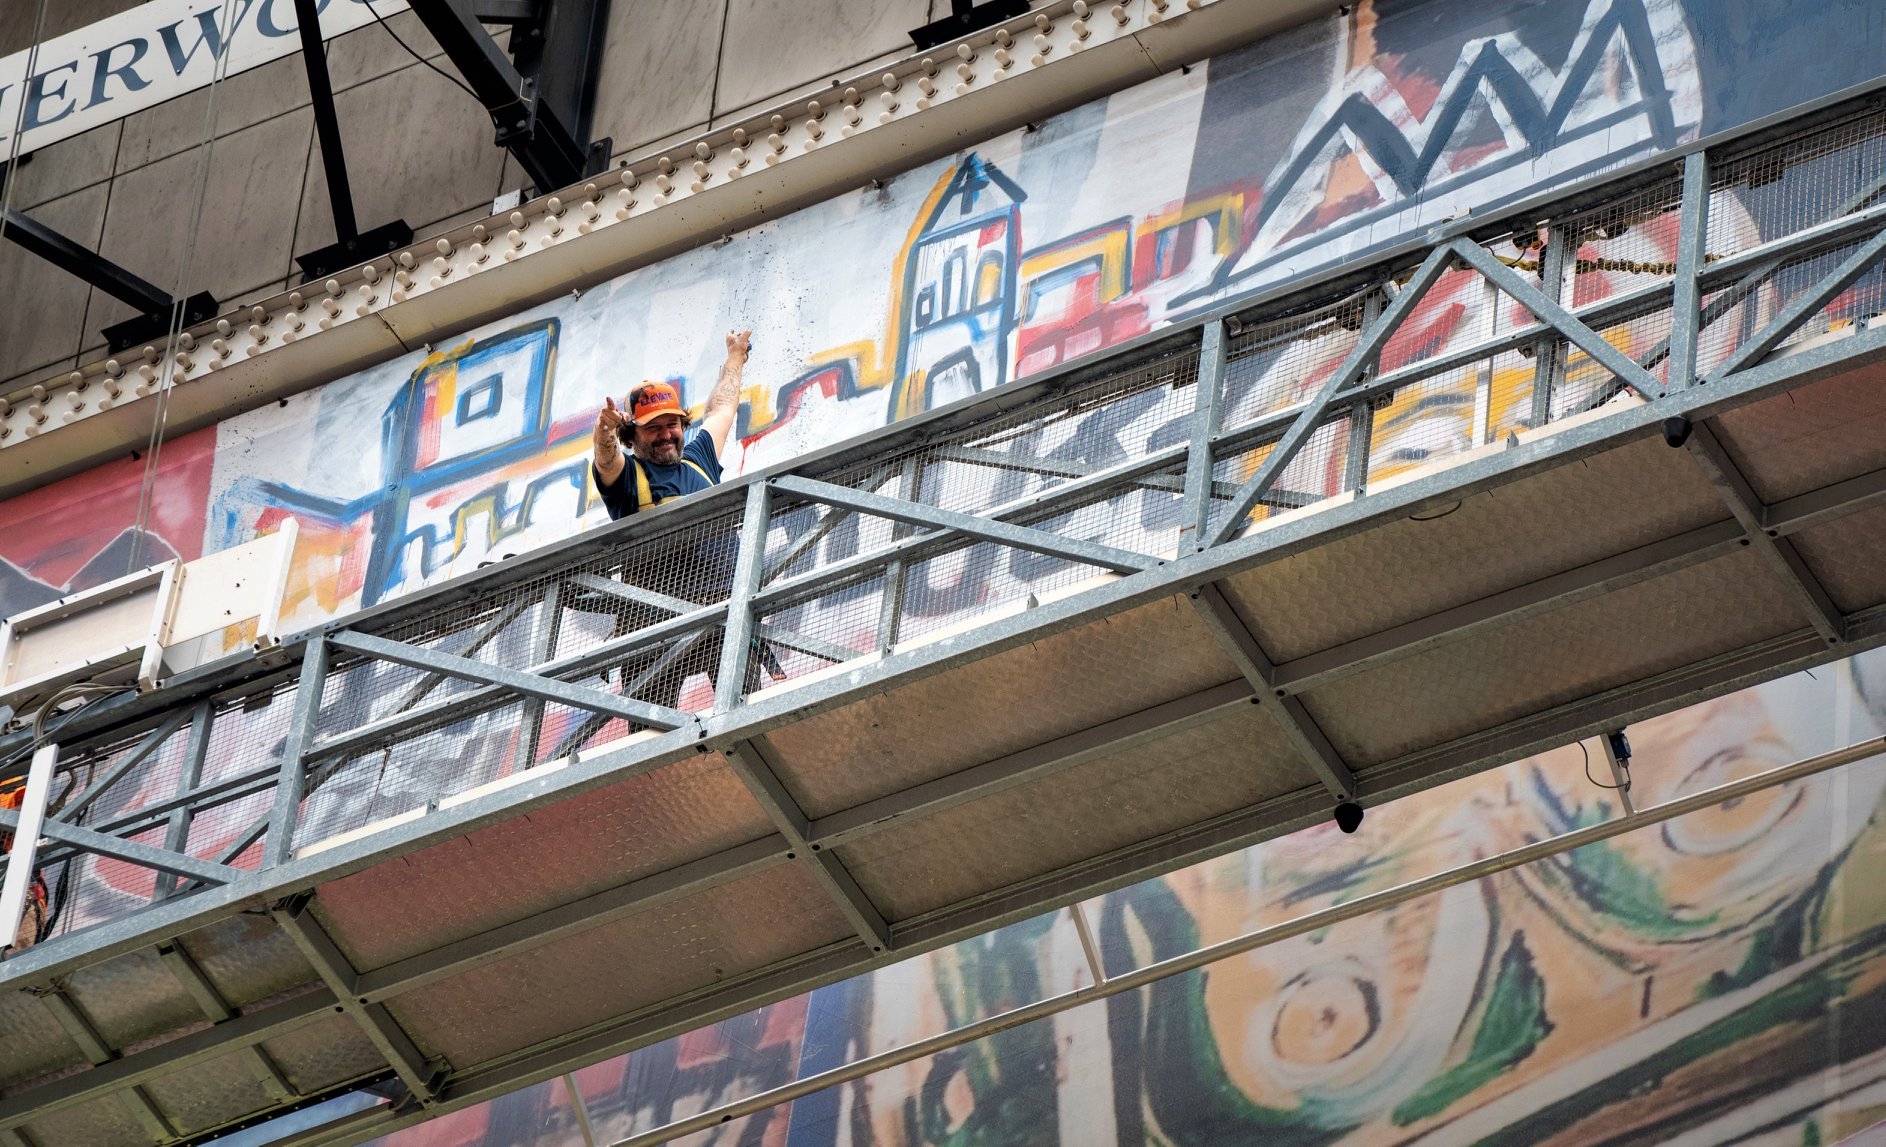  Domingo Zapata pinta mural de 15 pisos en Times Square, el más grande en la historia de Nueva York